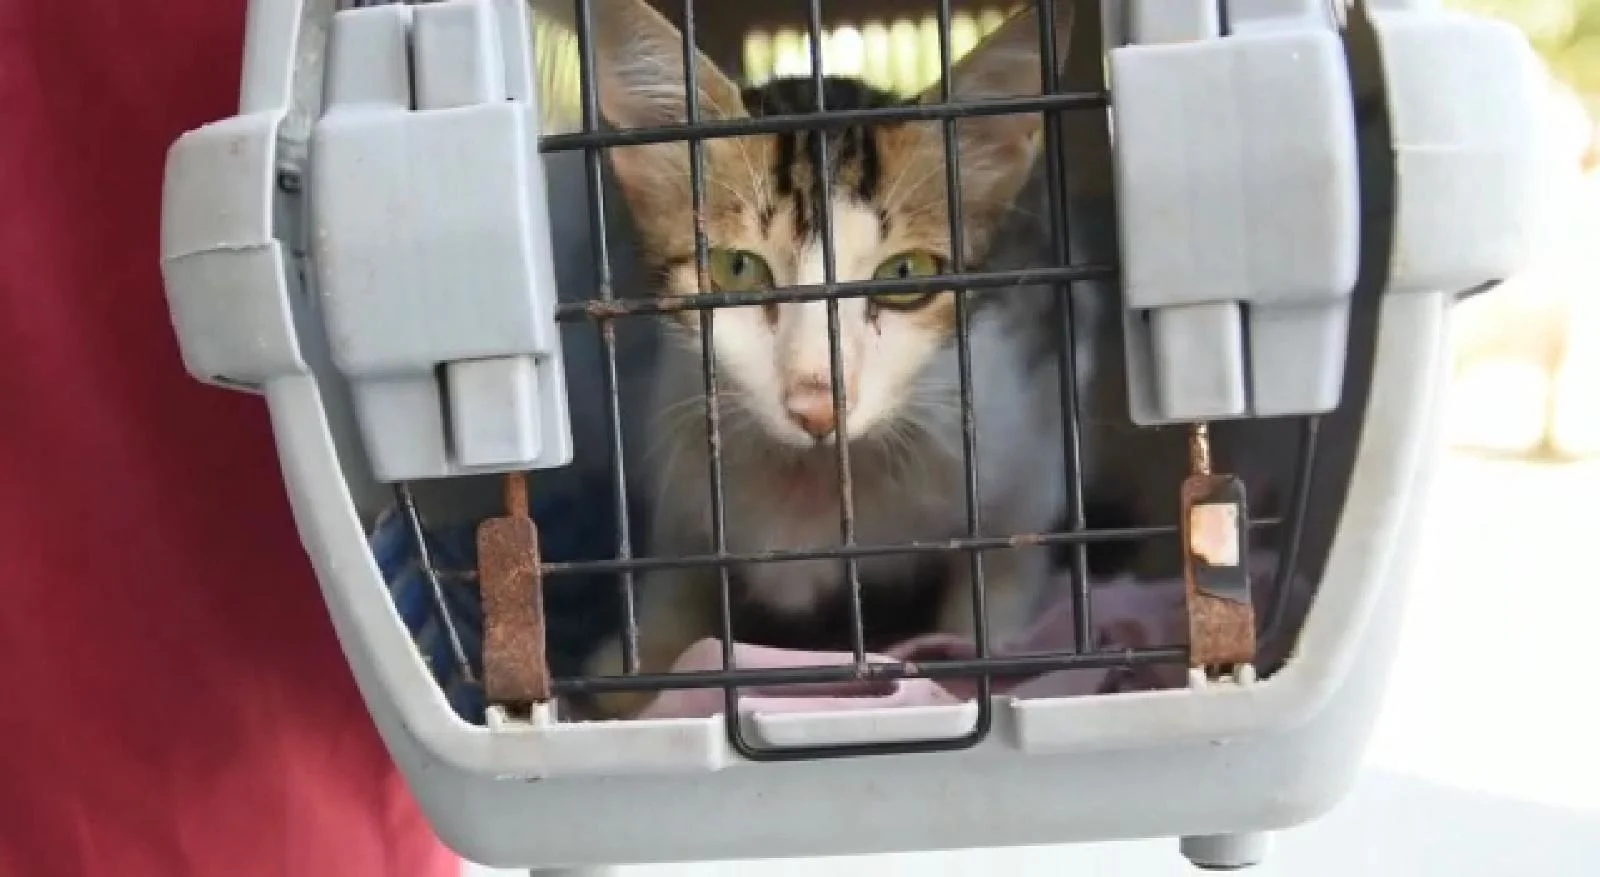 חתול שנפצע ברצועת עזה והועבר לטיפול בישראל